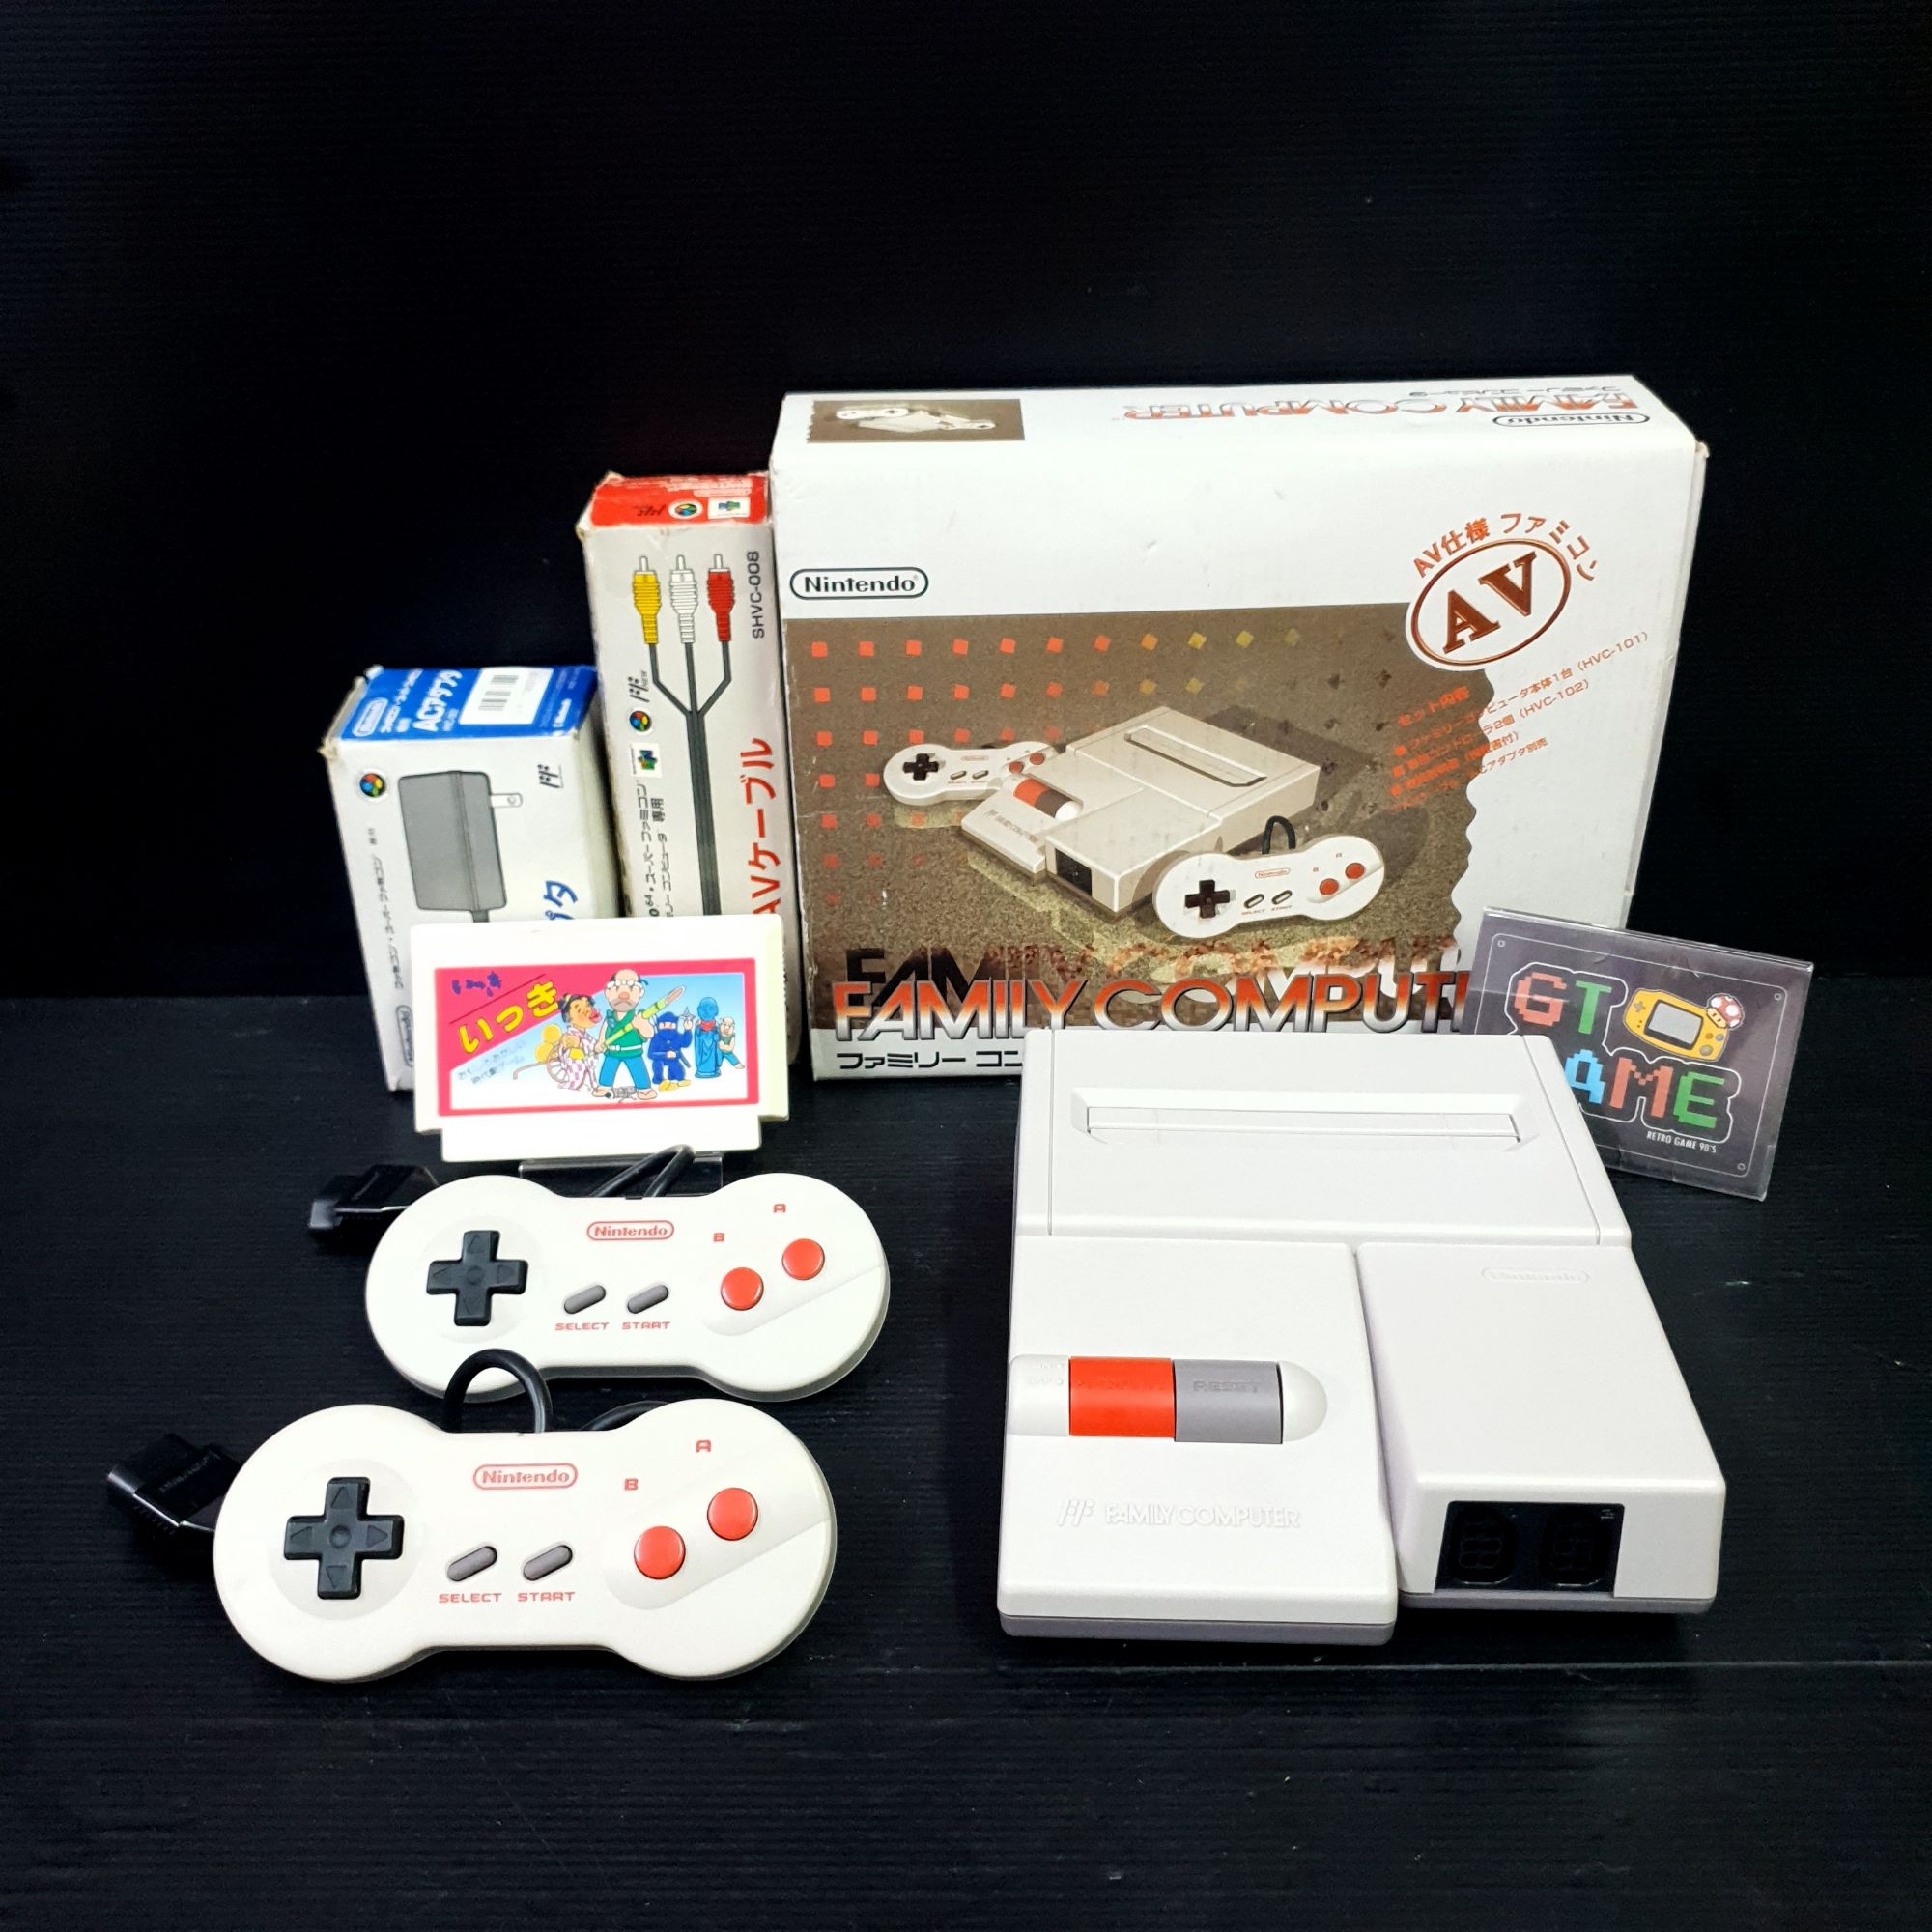 ช้อป Famicom ออนไลน์ หลากหลายสินค้ายอดนิยม | lazada.co.th